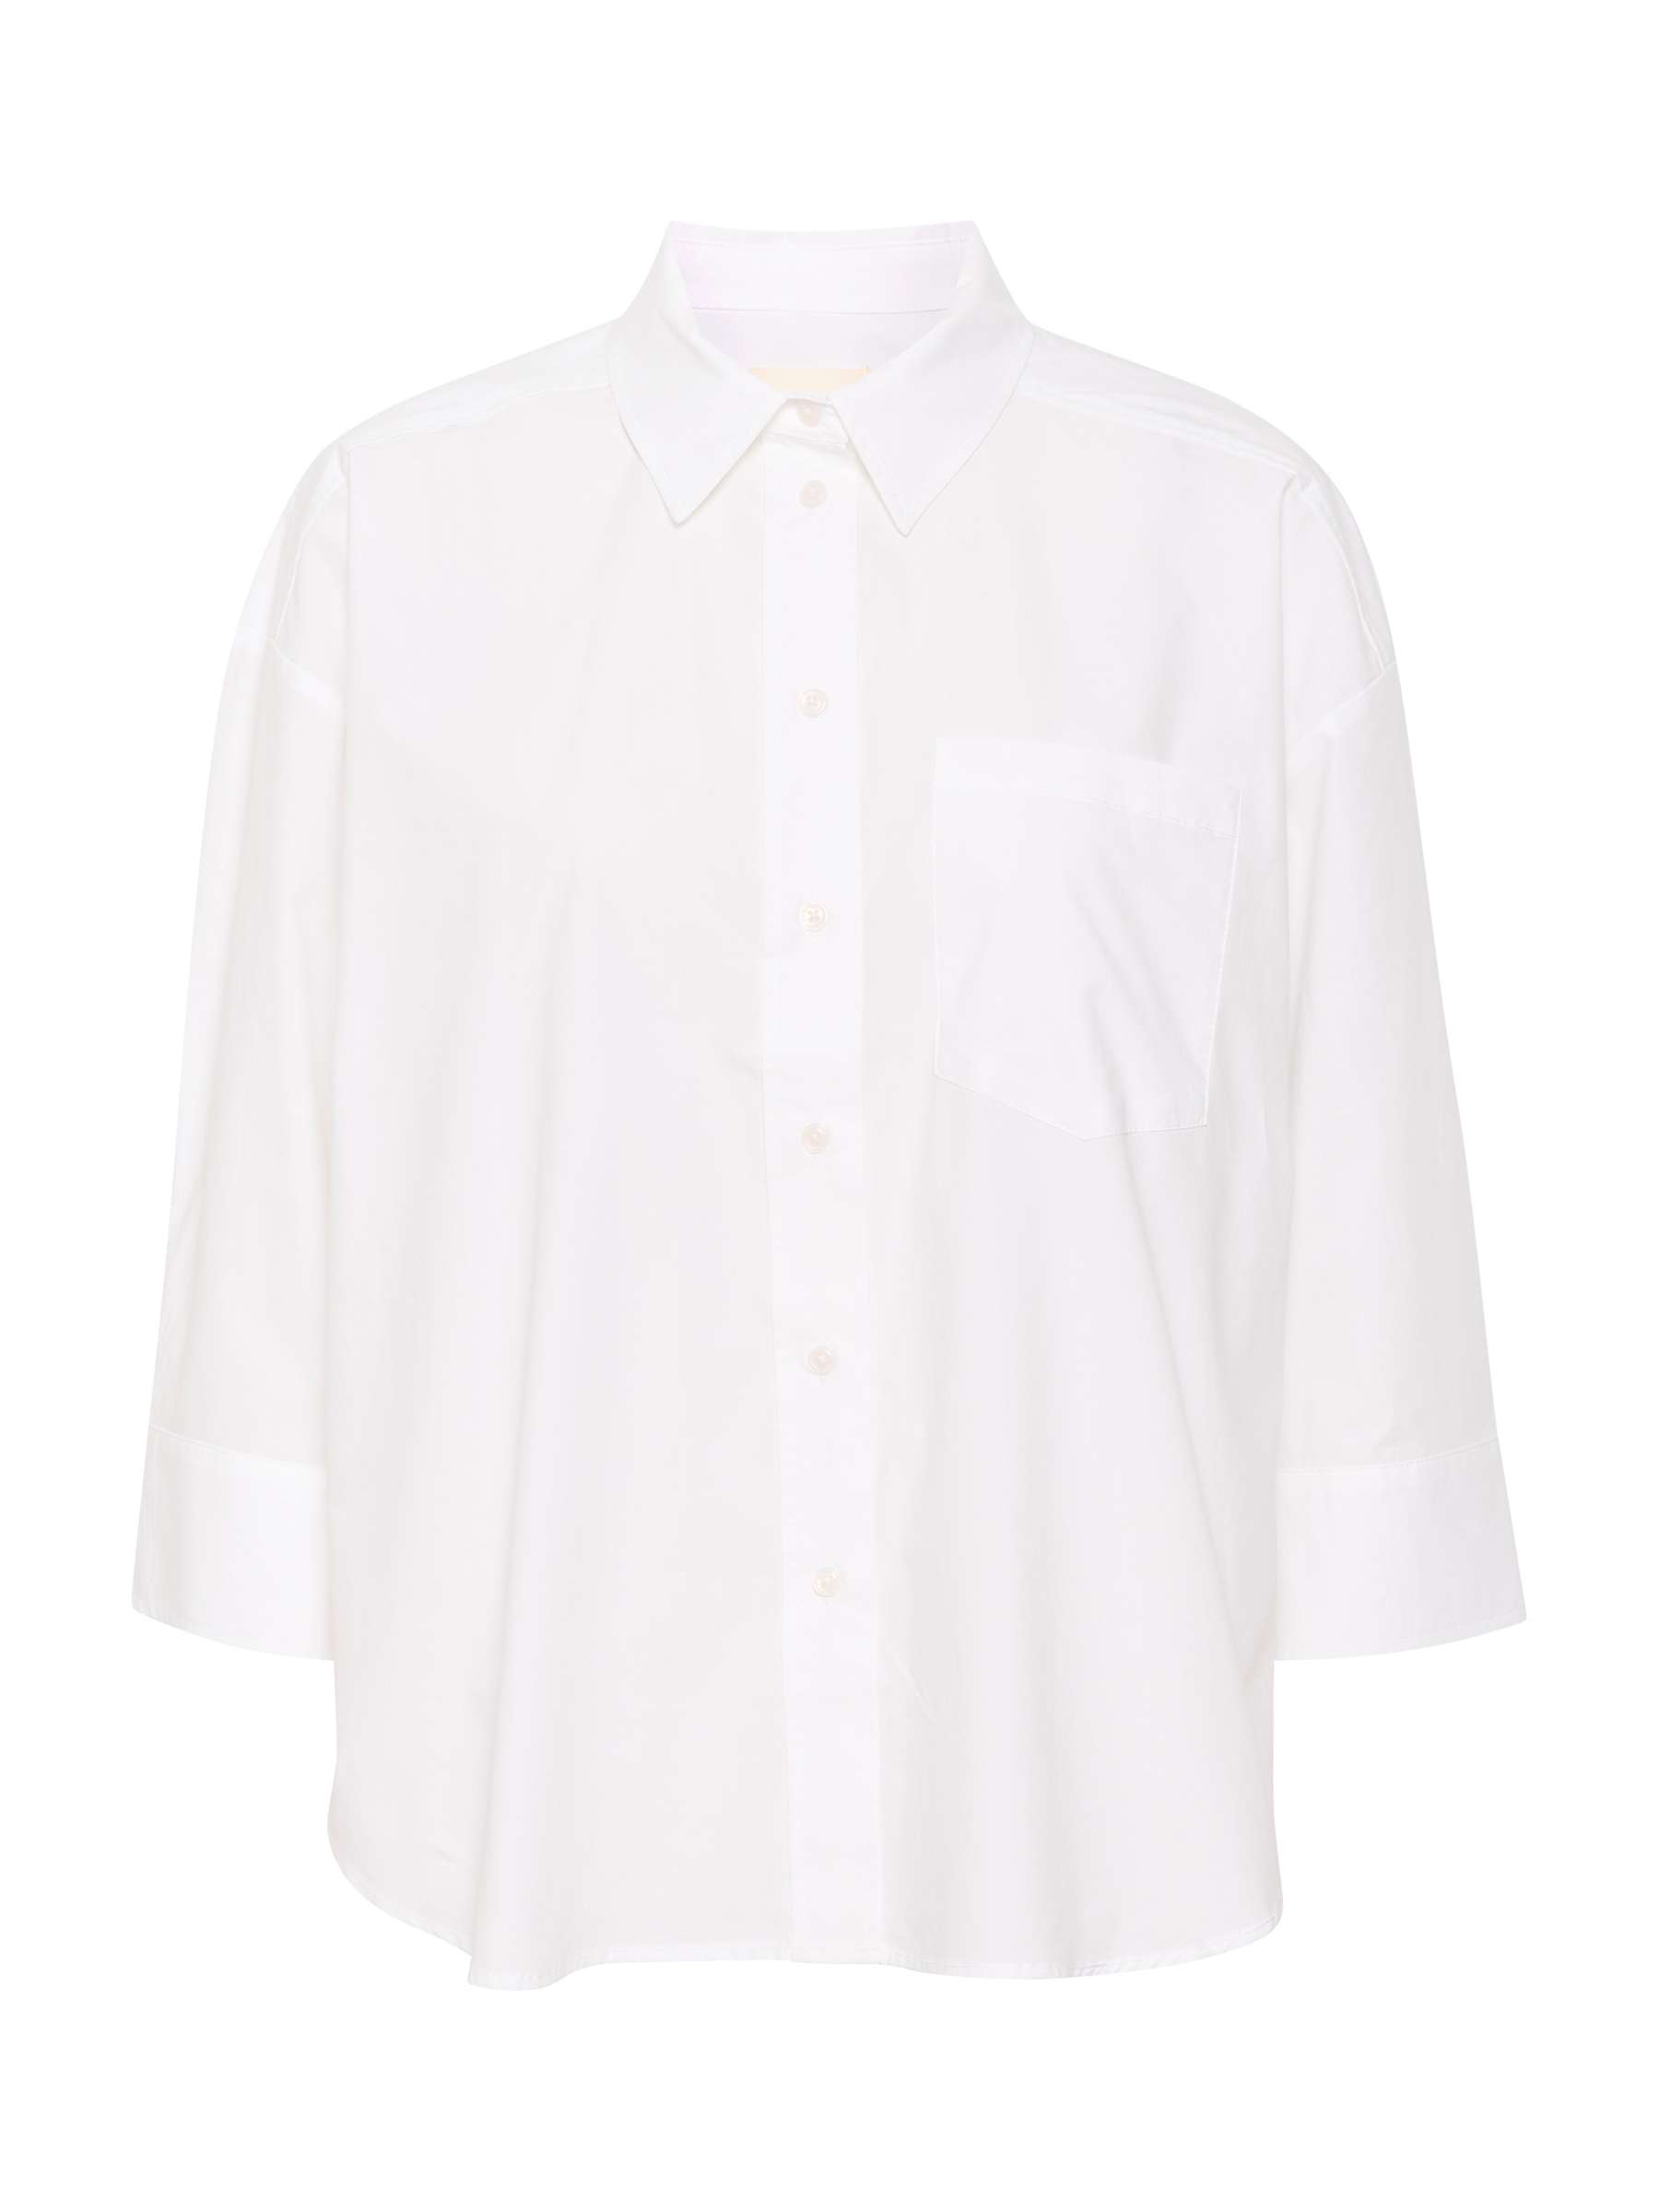 Buy Part Two Evamari Cotton Shirt Online at johnlewis.com